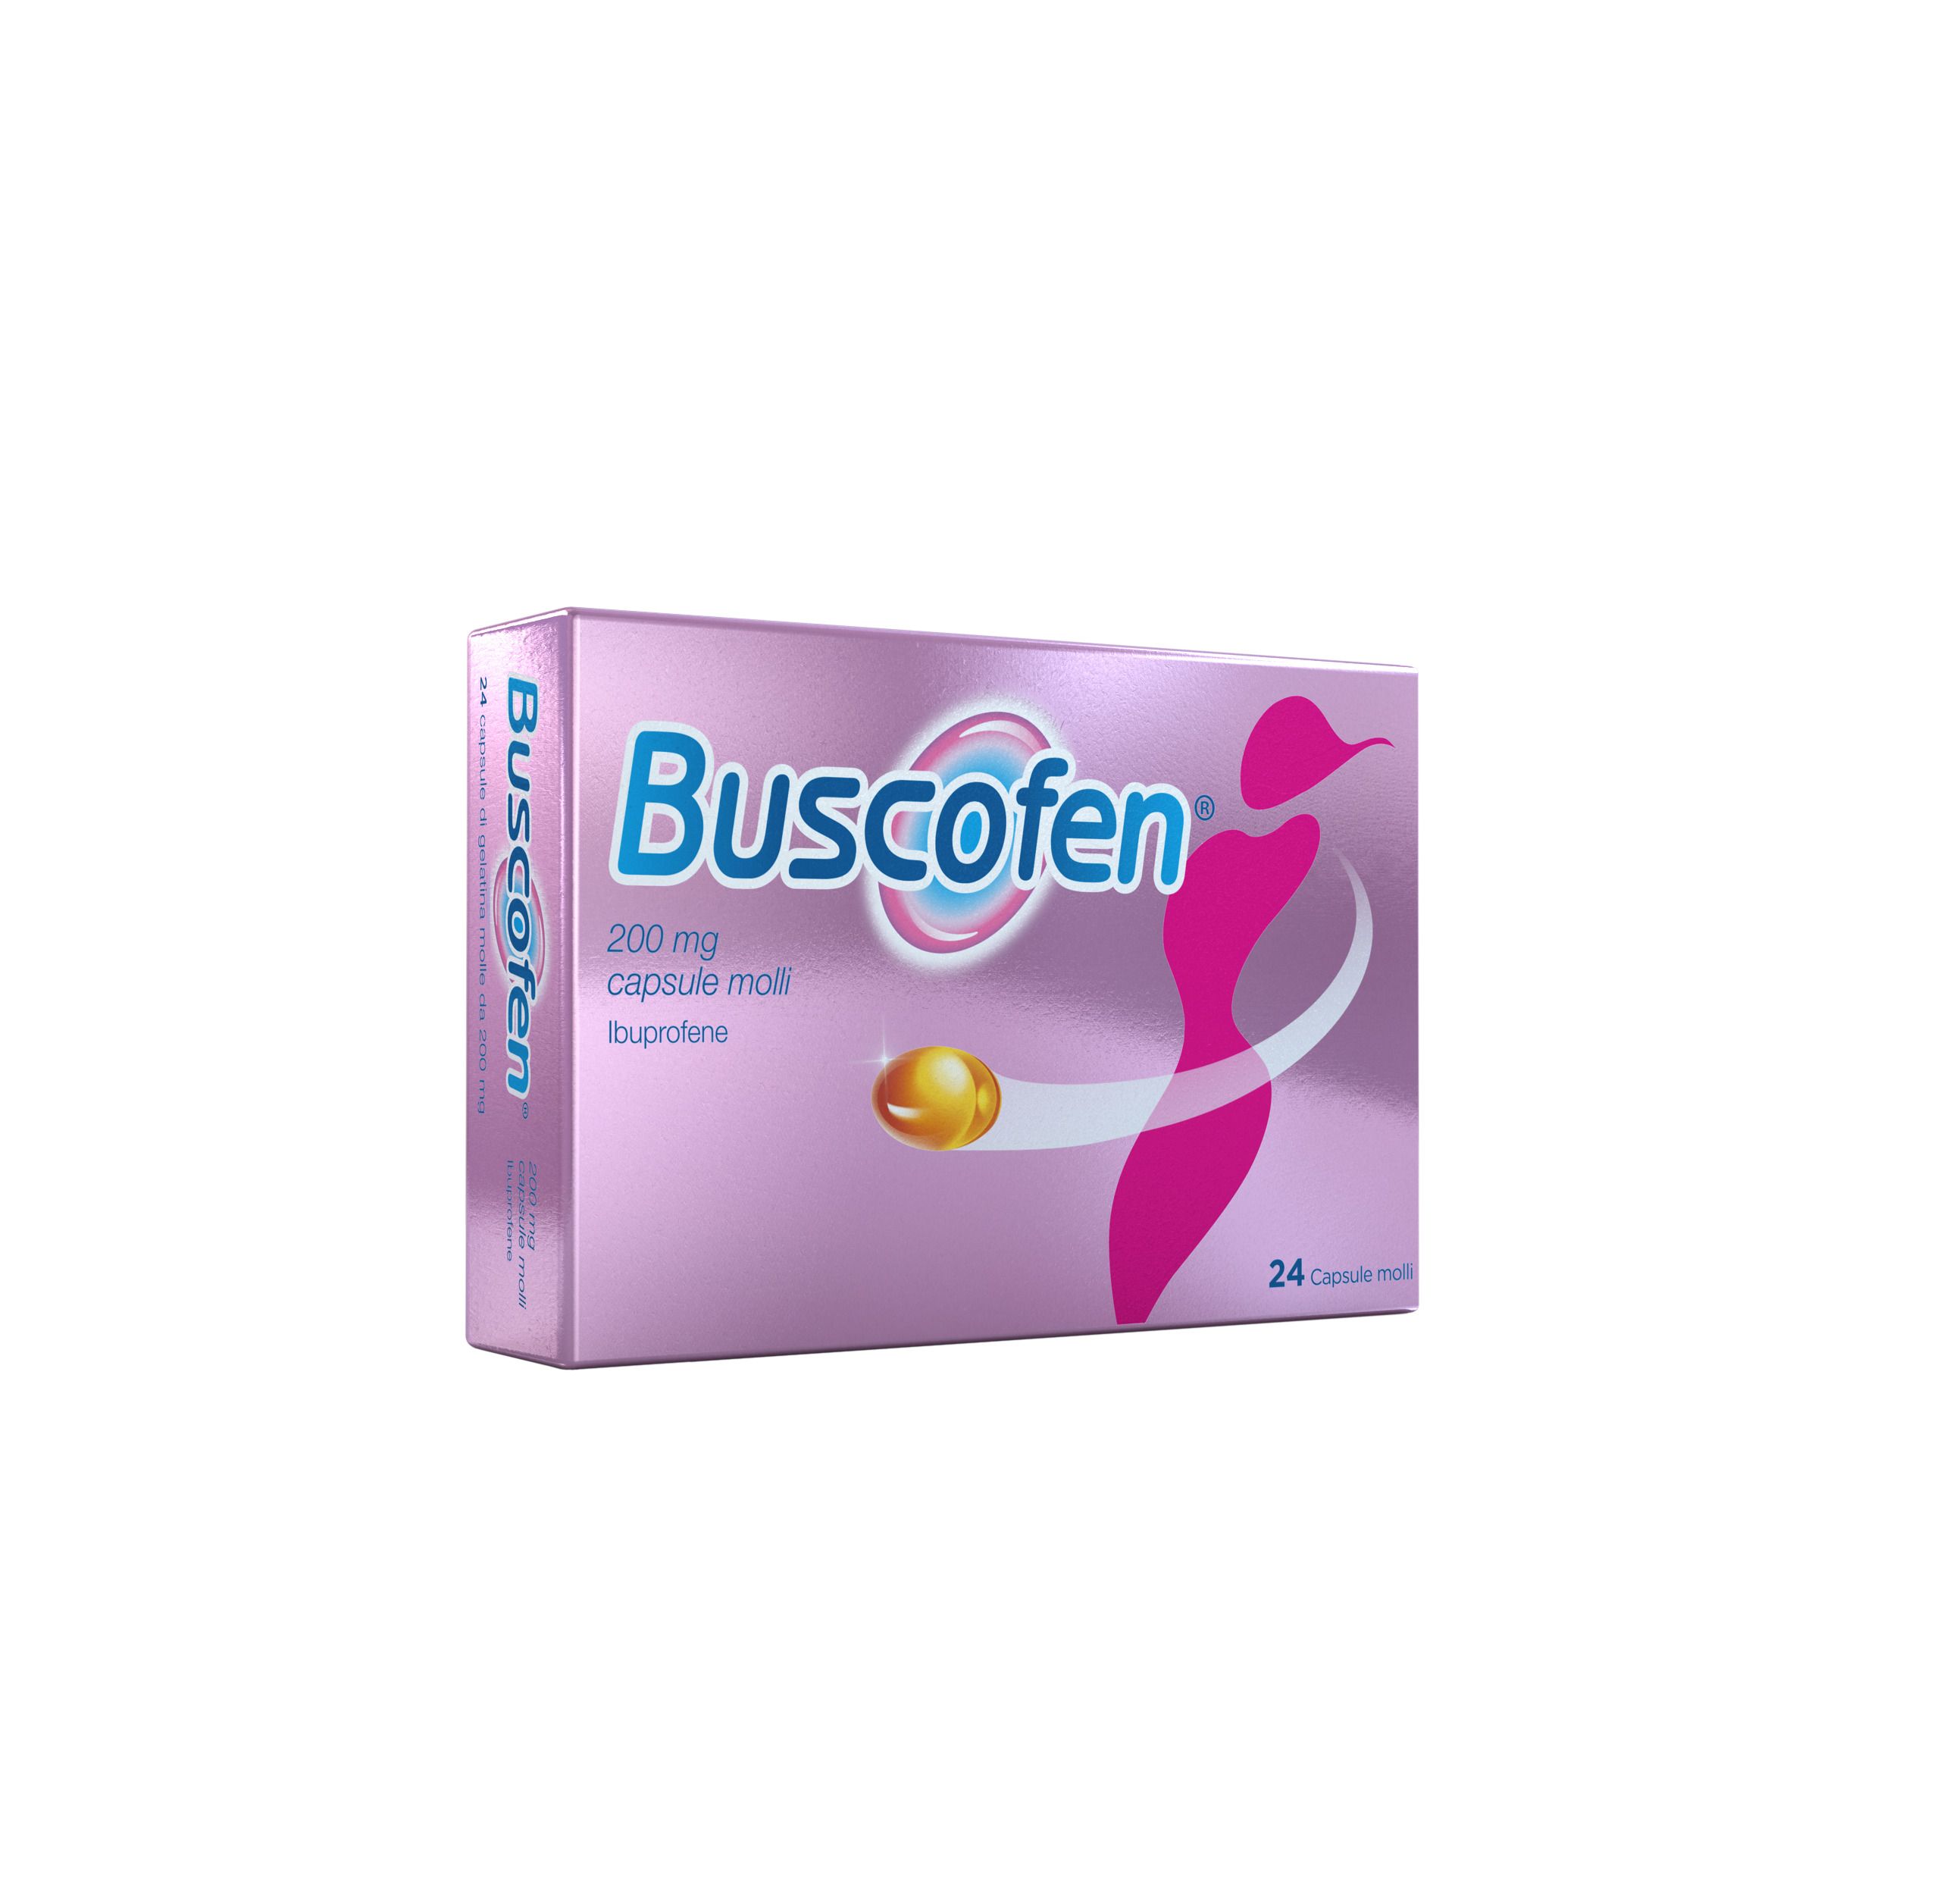 Buscofen® 24 Capsule molli